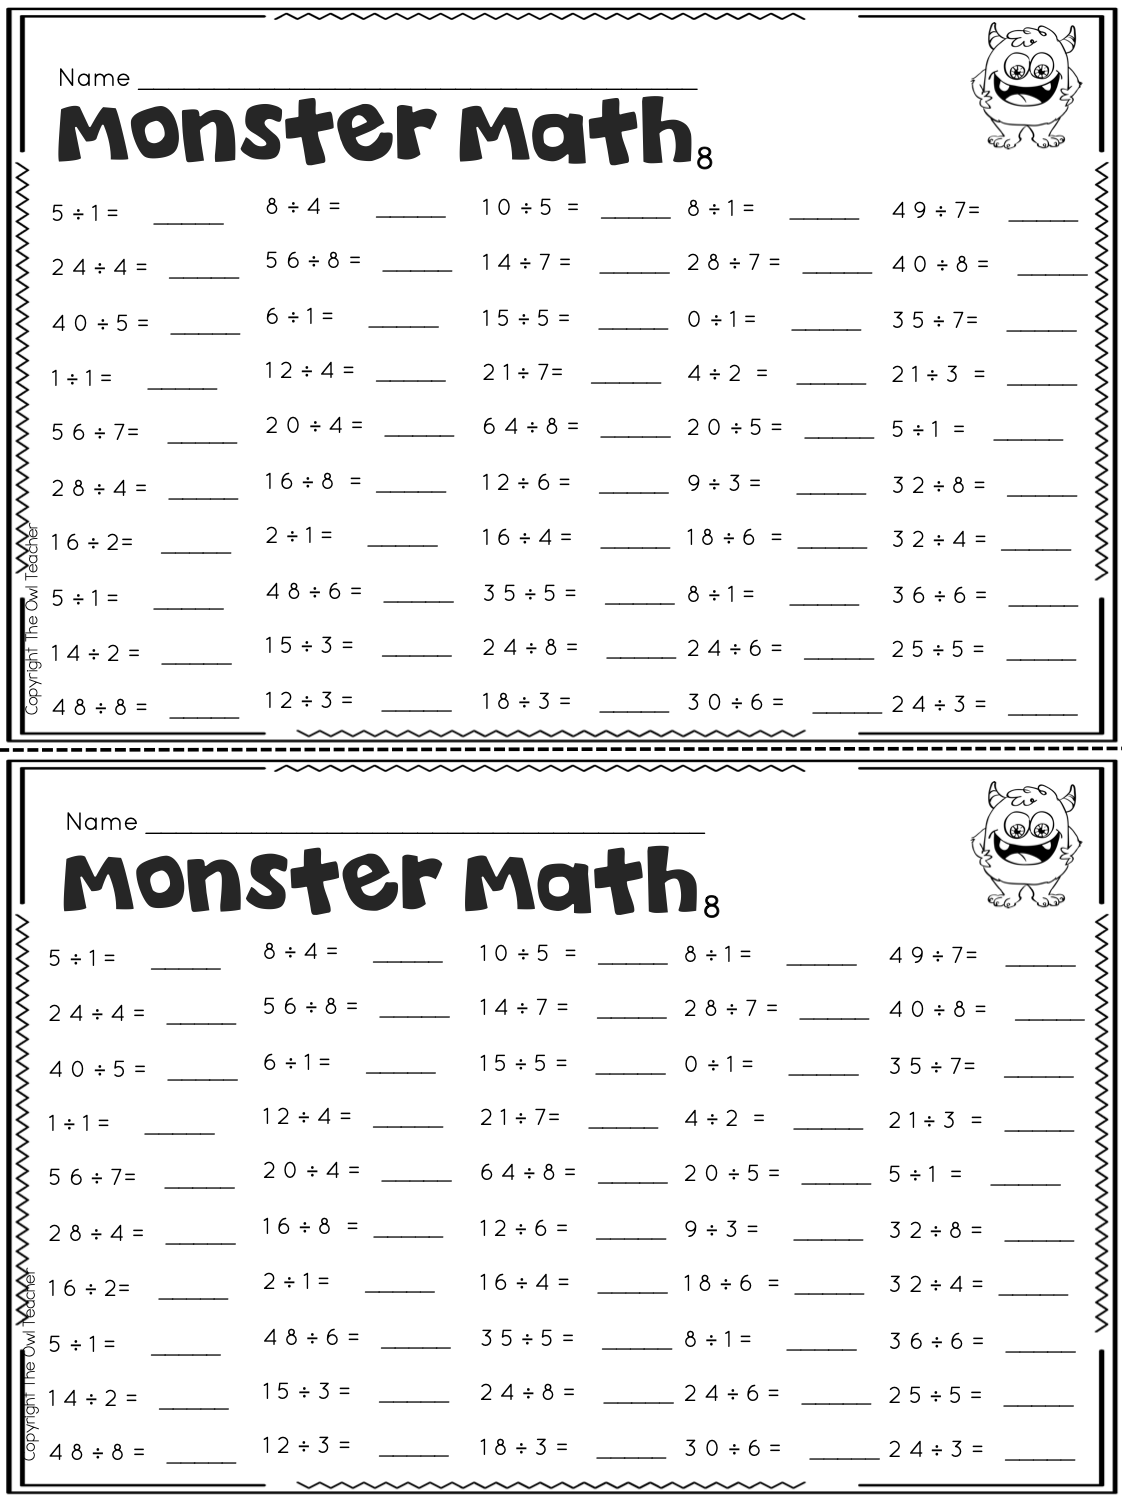 multiplication-fluency-practice-worksheets-printable-worksheets